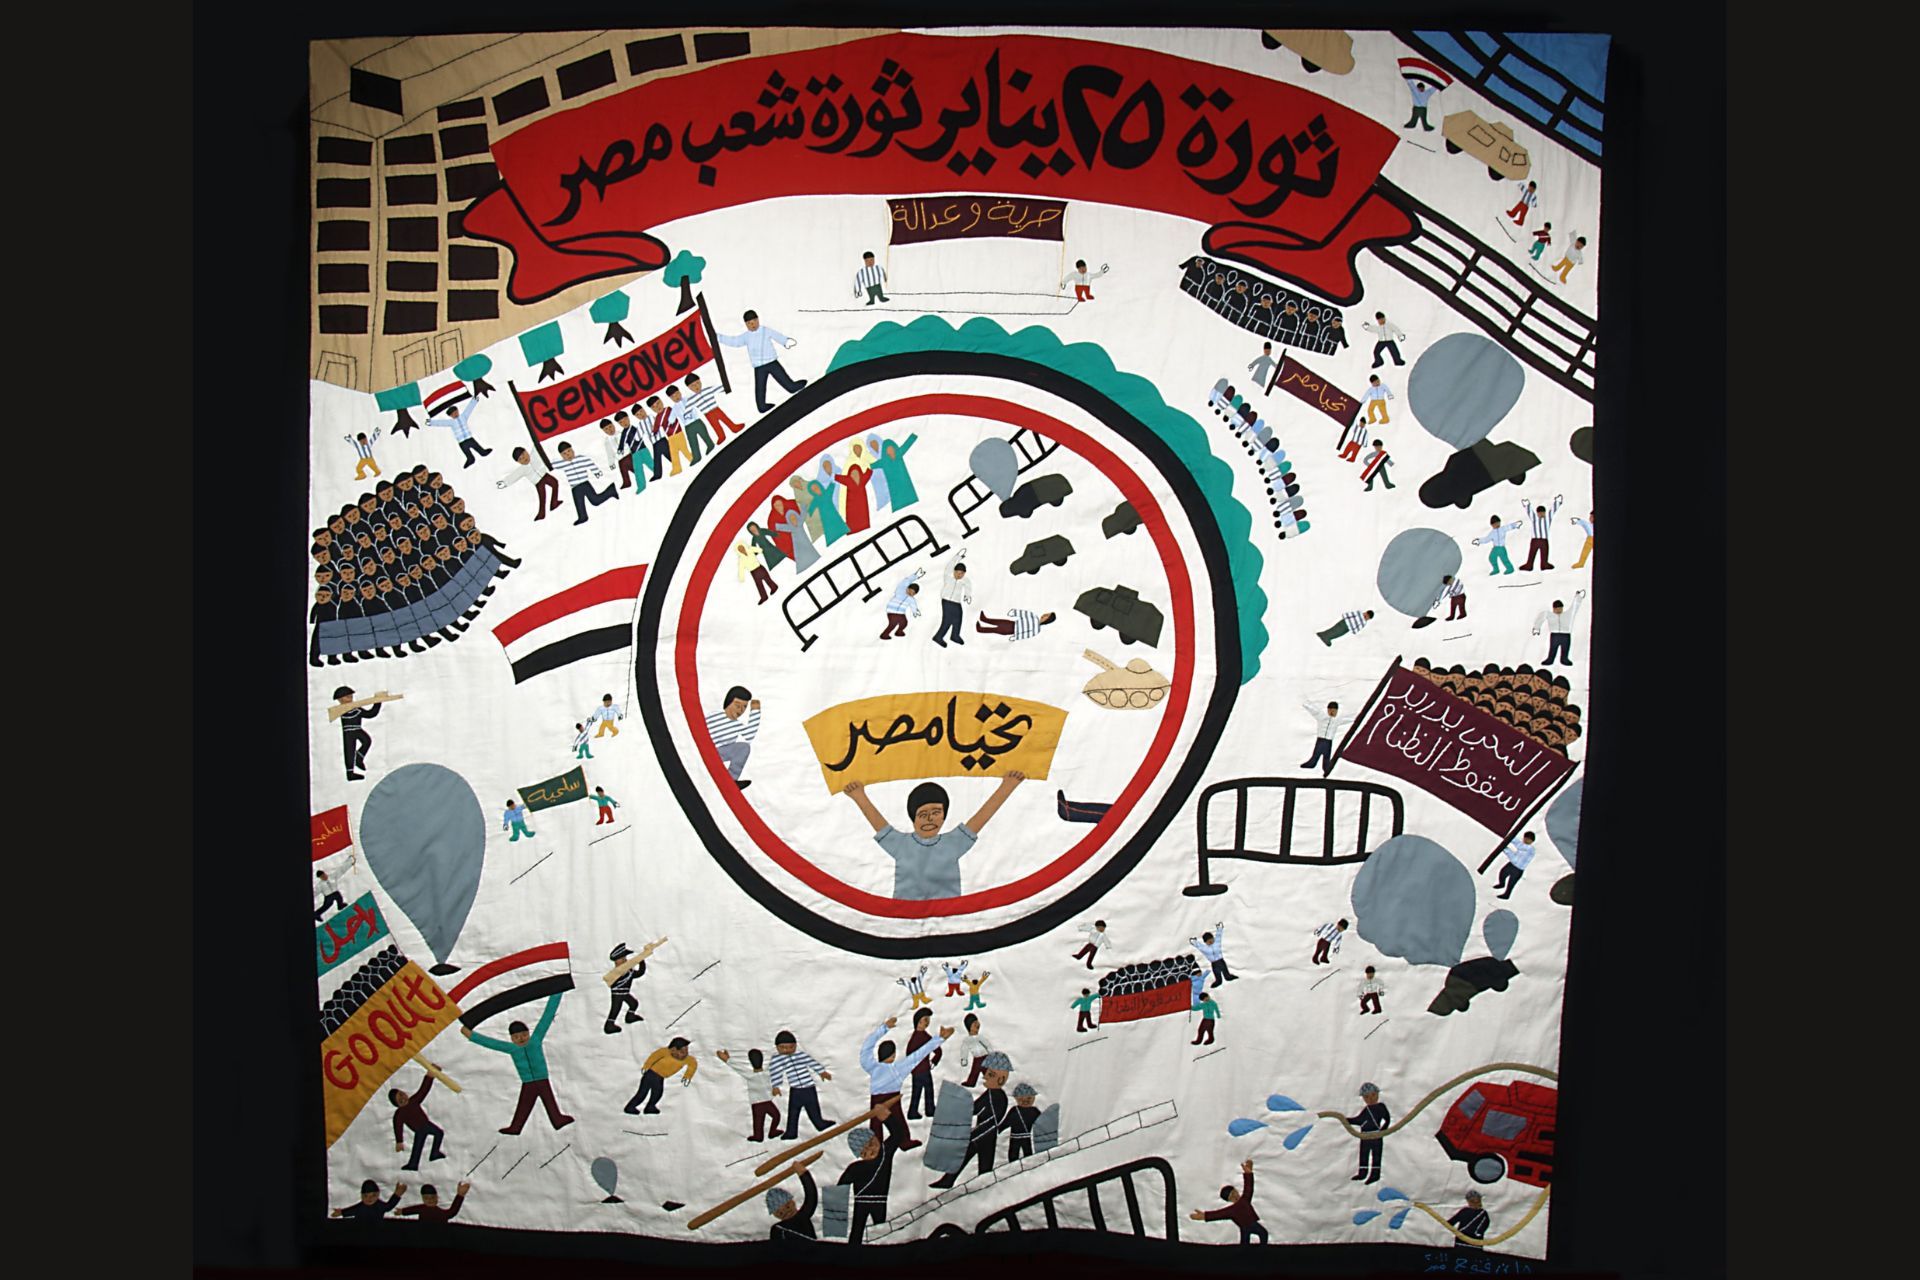 Hany's Revolution, 25th January, 2011, Cairo, Egypt by Hany Abdul Kader, 2011